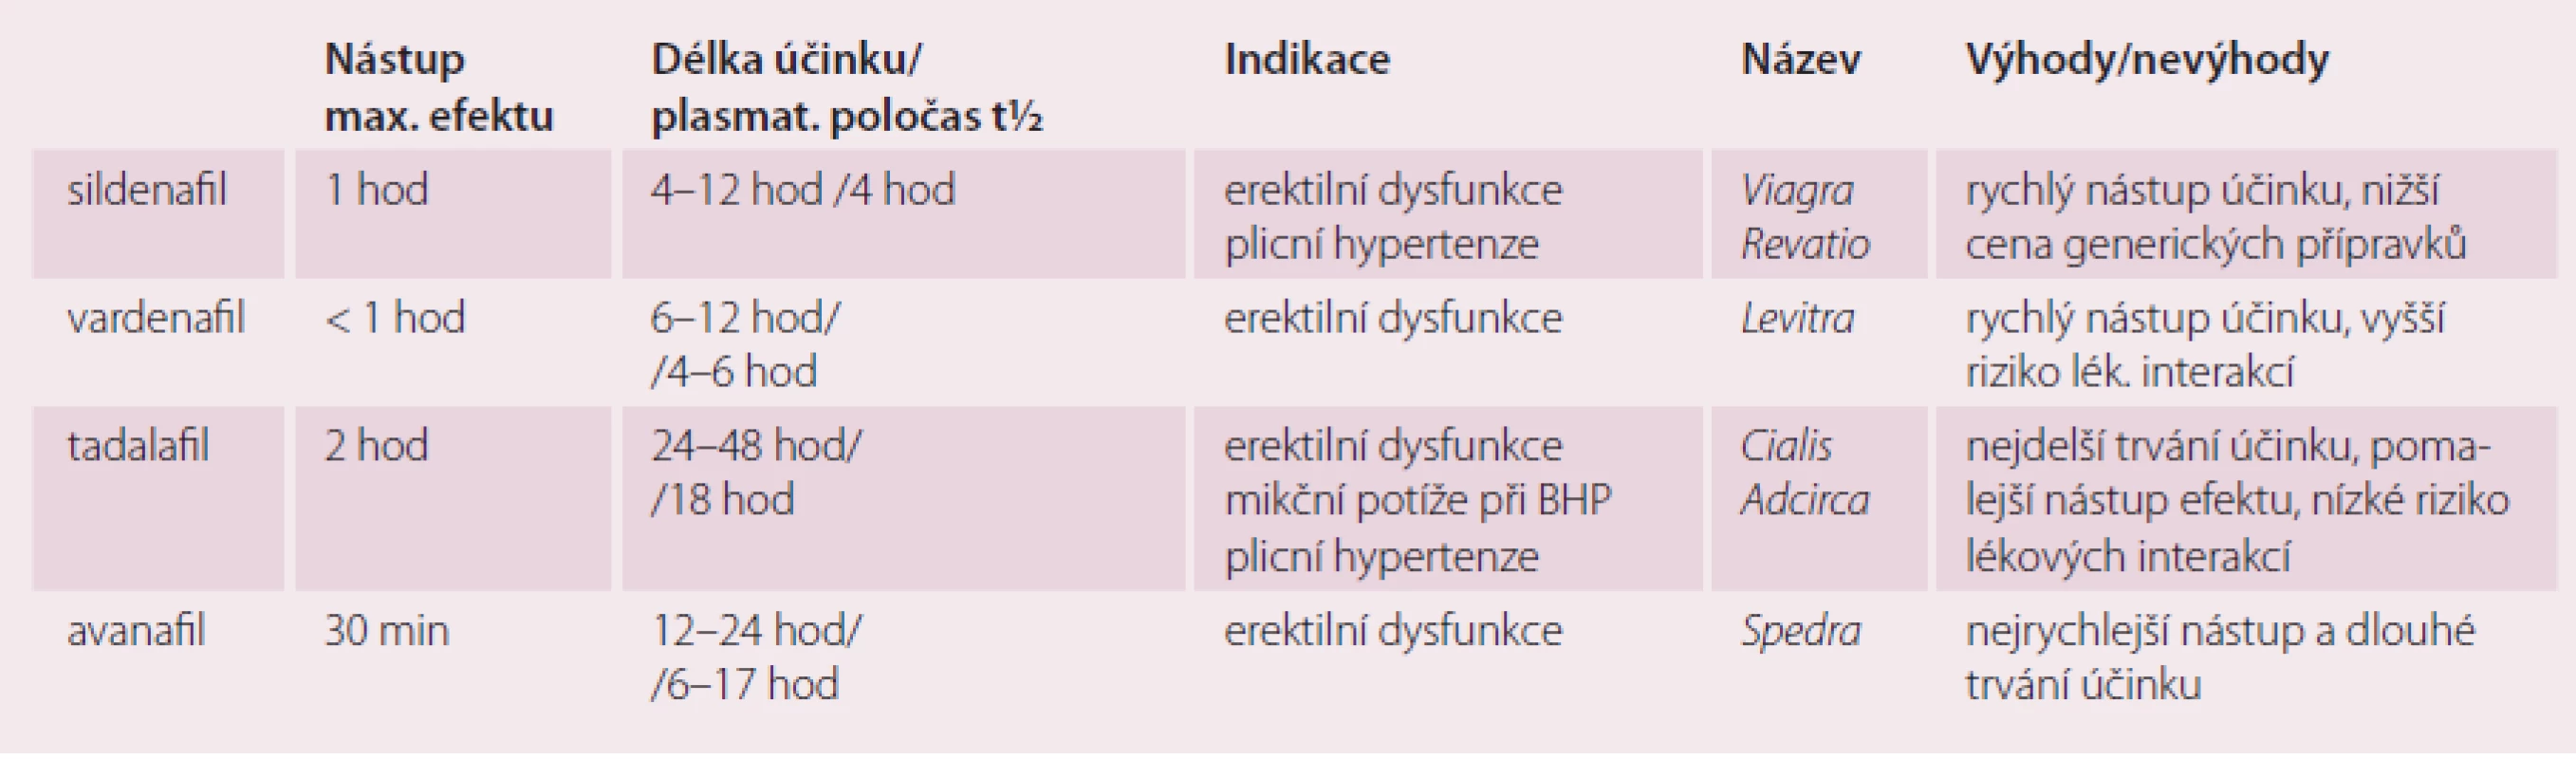 Srovnání vlastností a indikací jednotlivých inhibitorů PDE-5 (podle platných SPC).